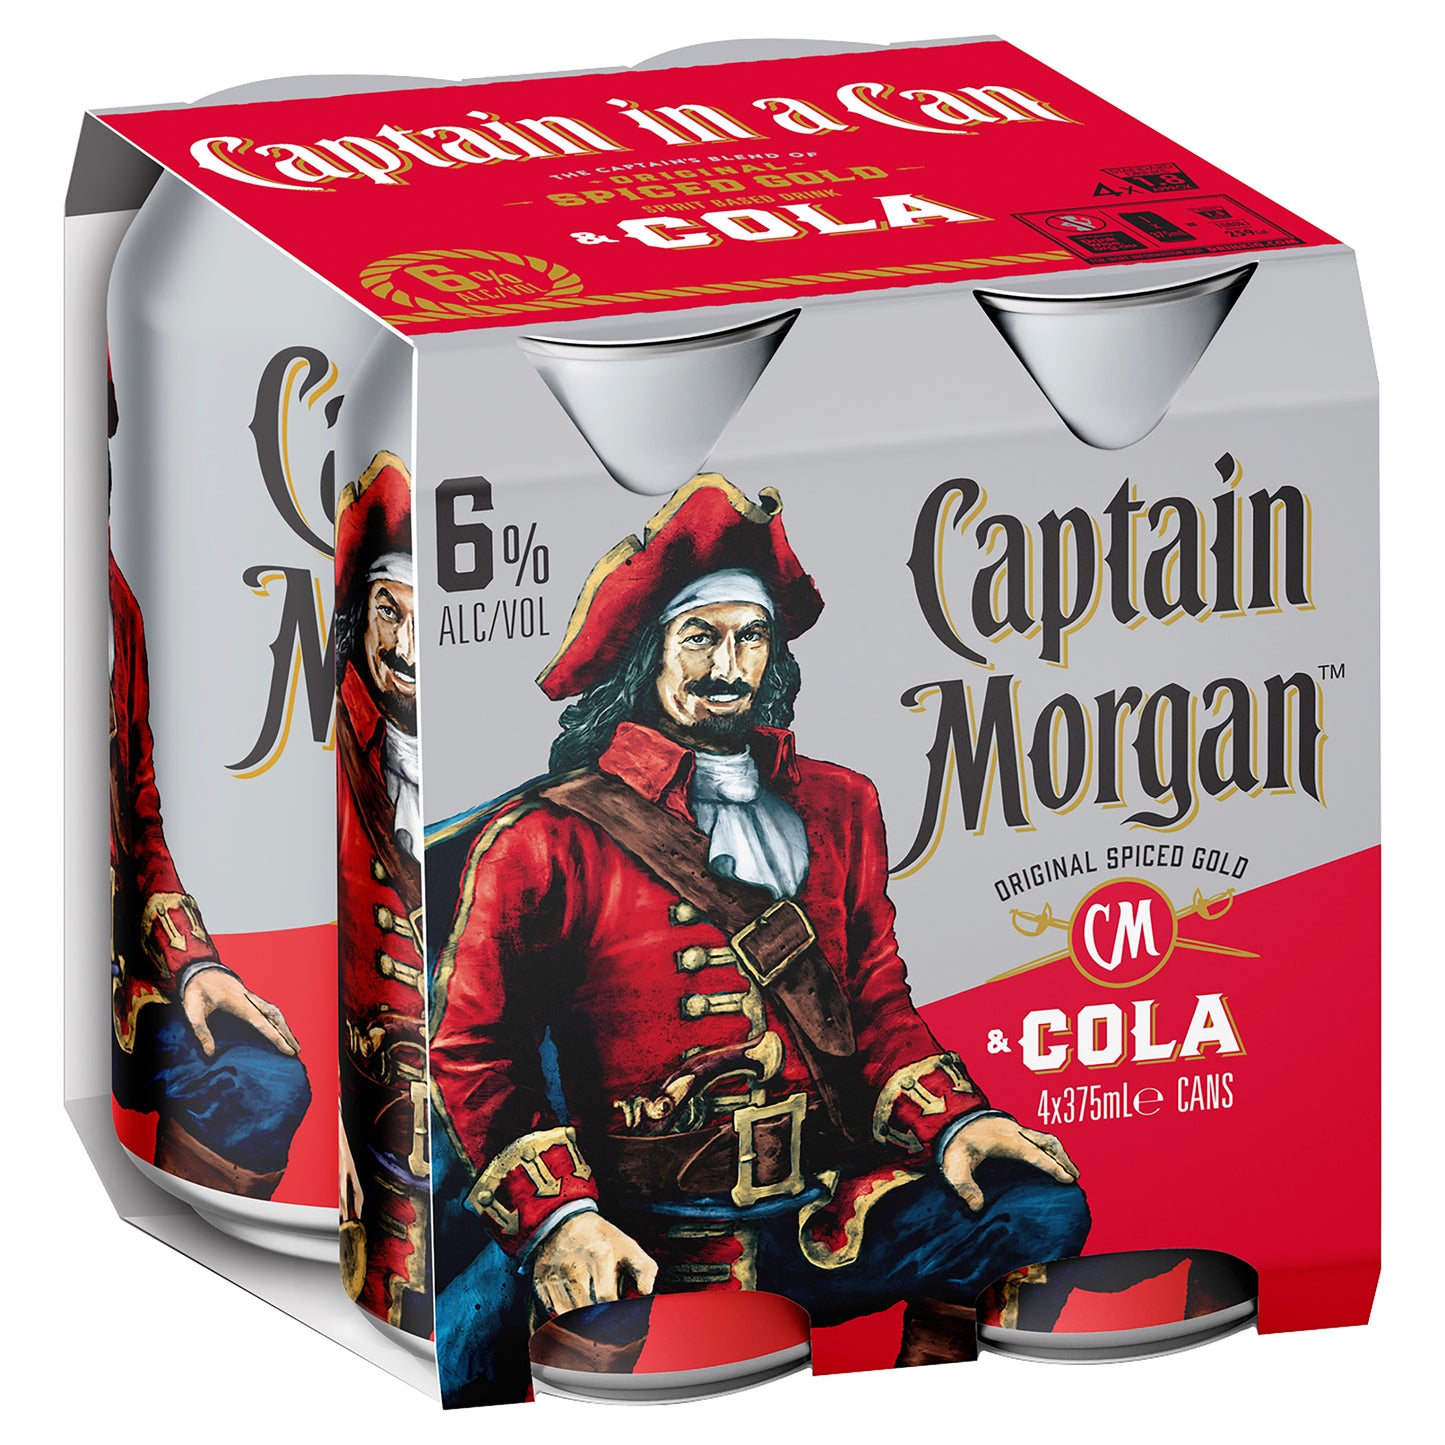 Captain Morgan Original Spiced Gold & Cola 6% 4x375mL